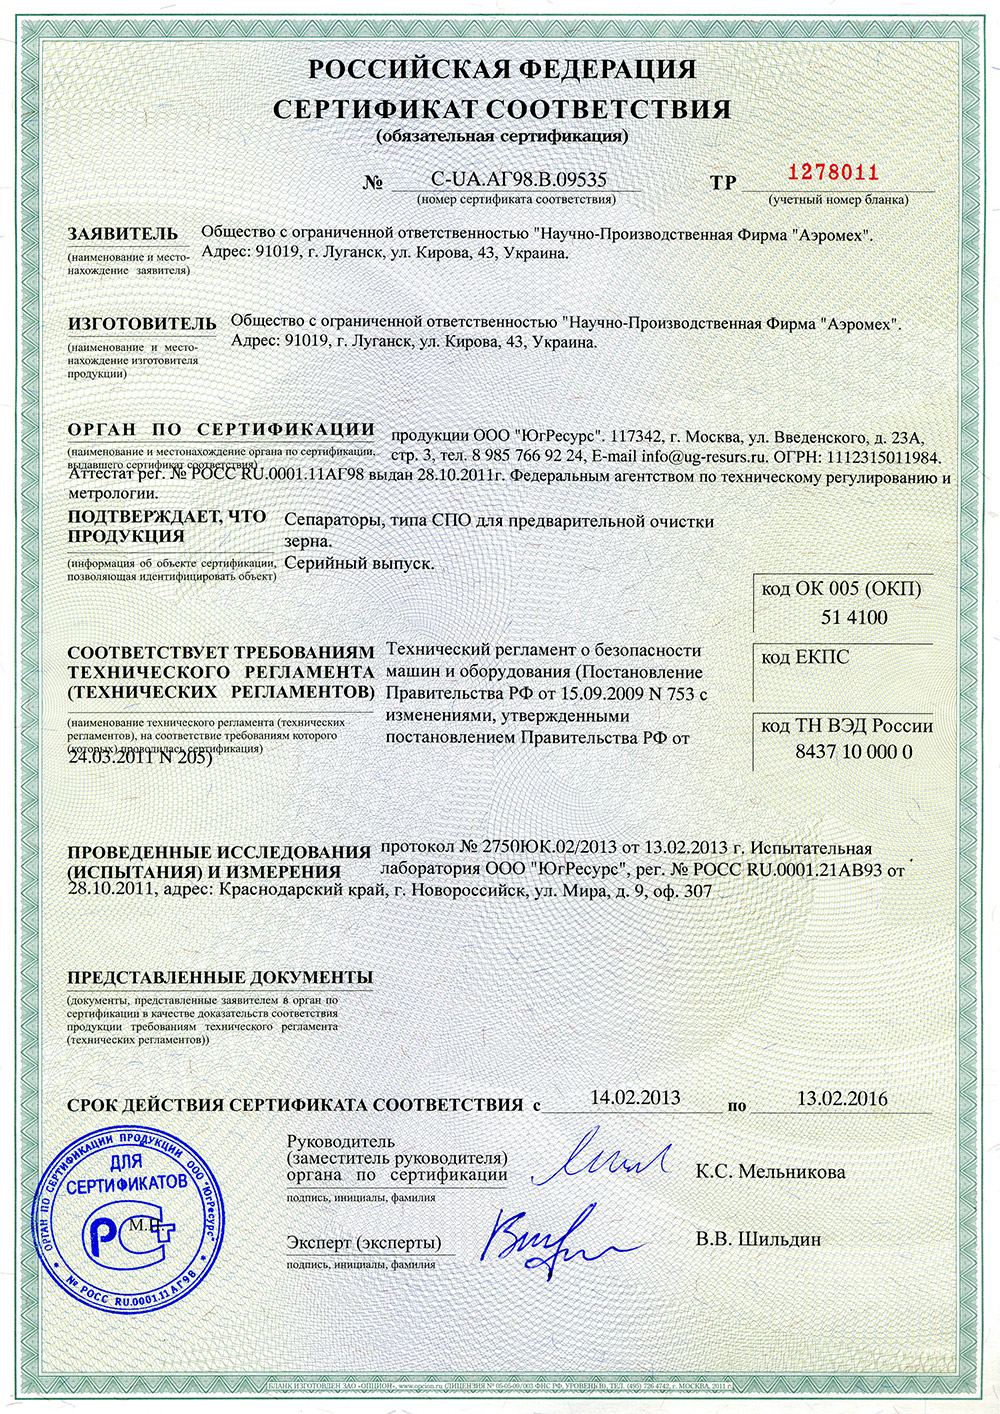 Российский сертификат соответствия на сепараторы СПО сепаратор предварительной очистки зерна